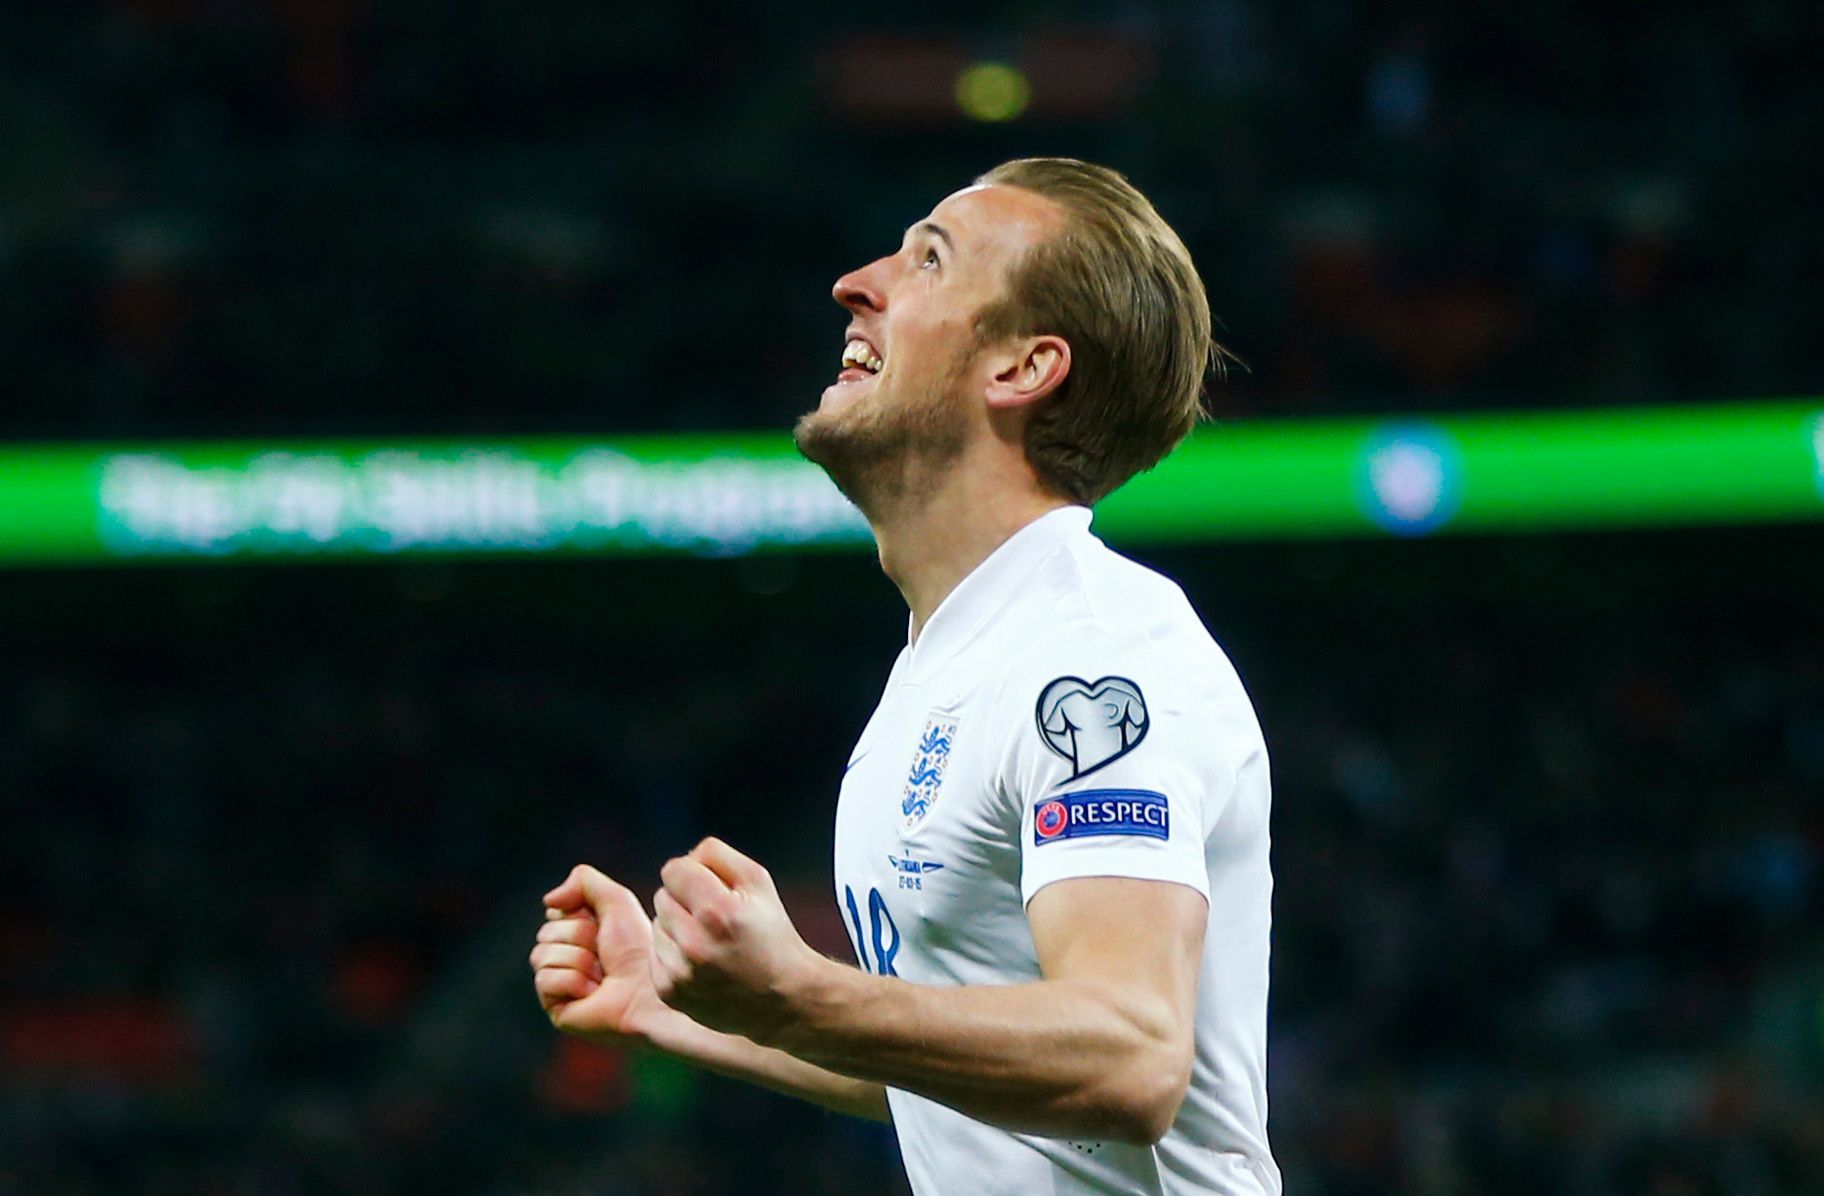 Football: England's Harry Kane celebrates scoring their fourth goal